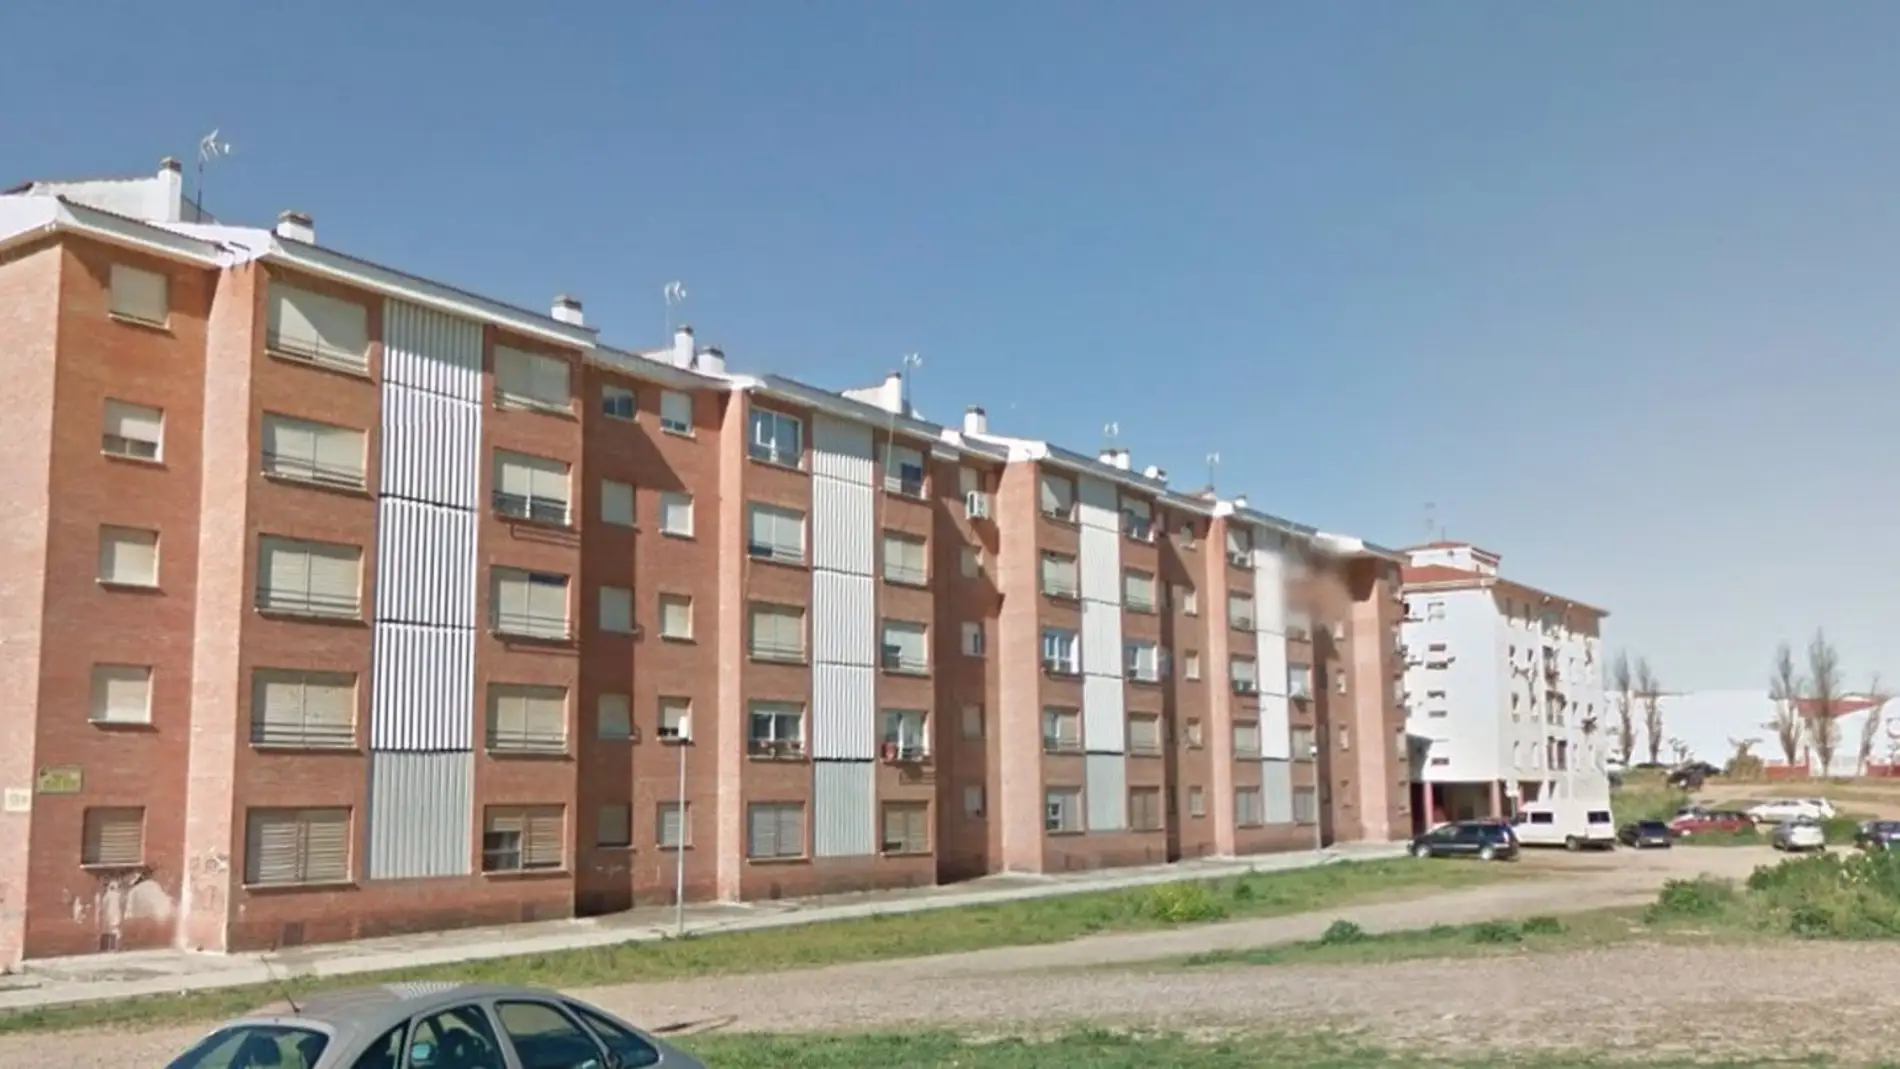 La Junta pondrá a disposición del alquiler social 40 viviendas en Badajoz tras realizar su rehabilitación energética